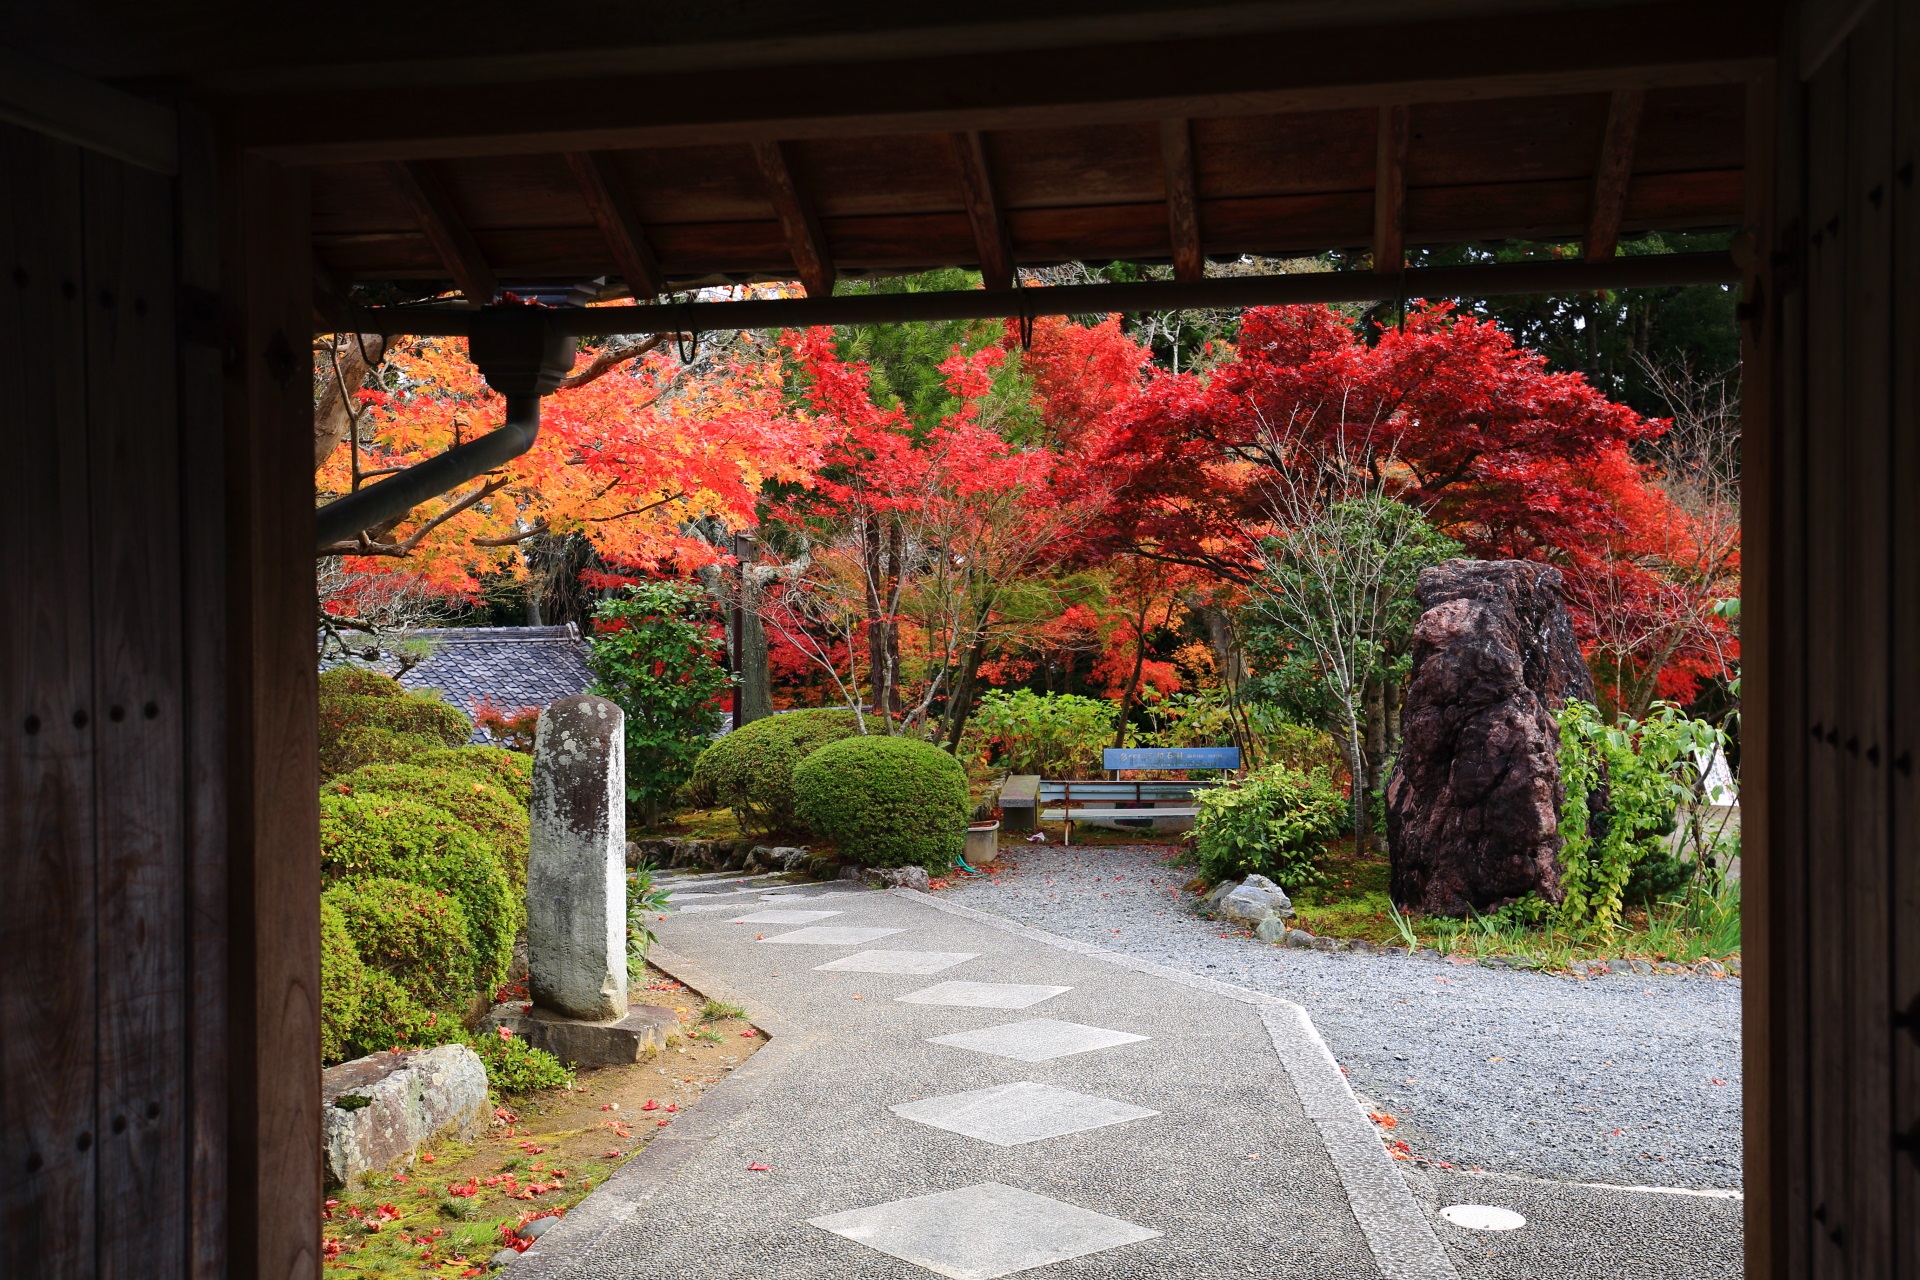 正法寺の山門の下から眺めた参道や庭園の額縁の紅葉